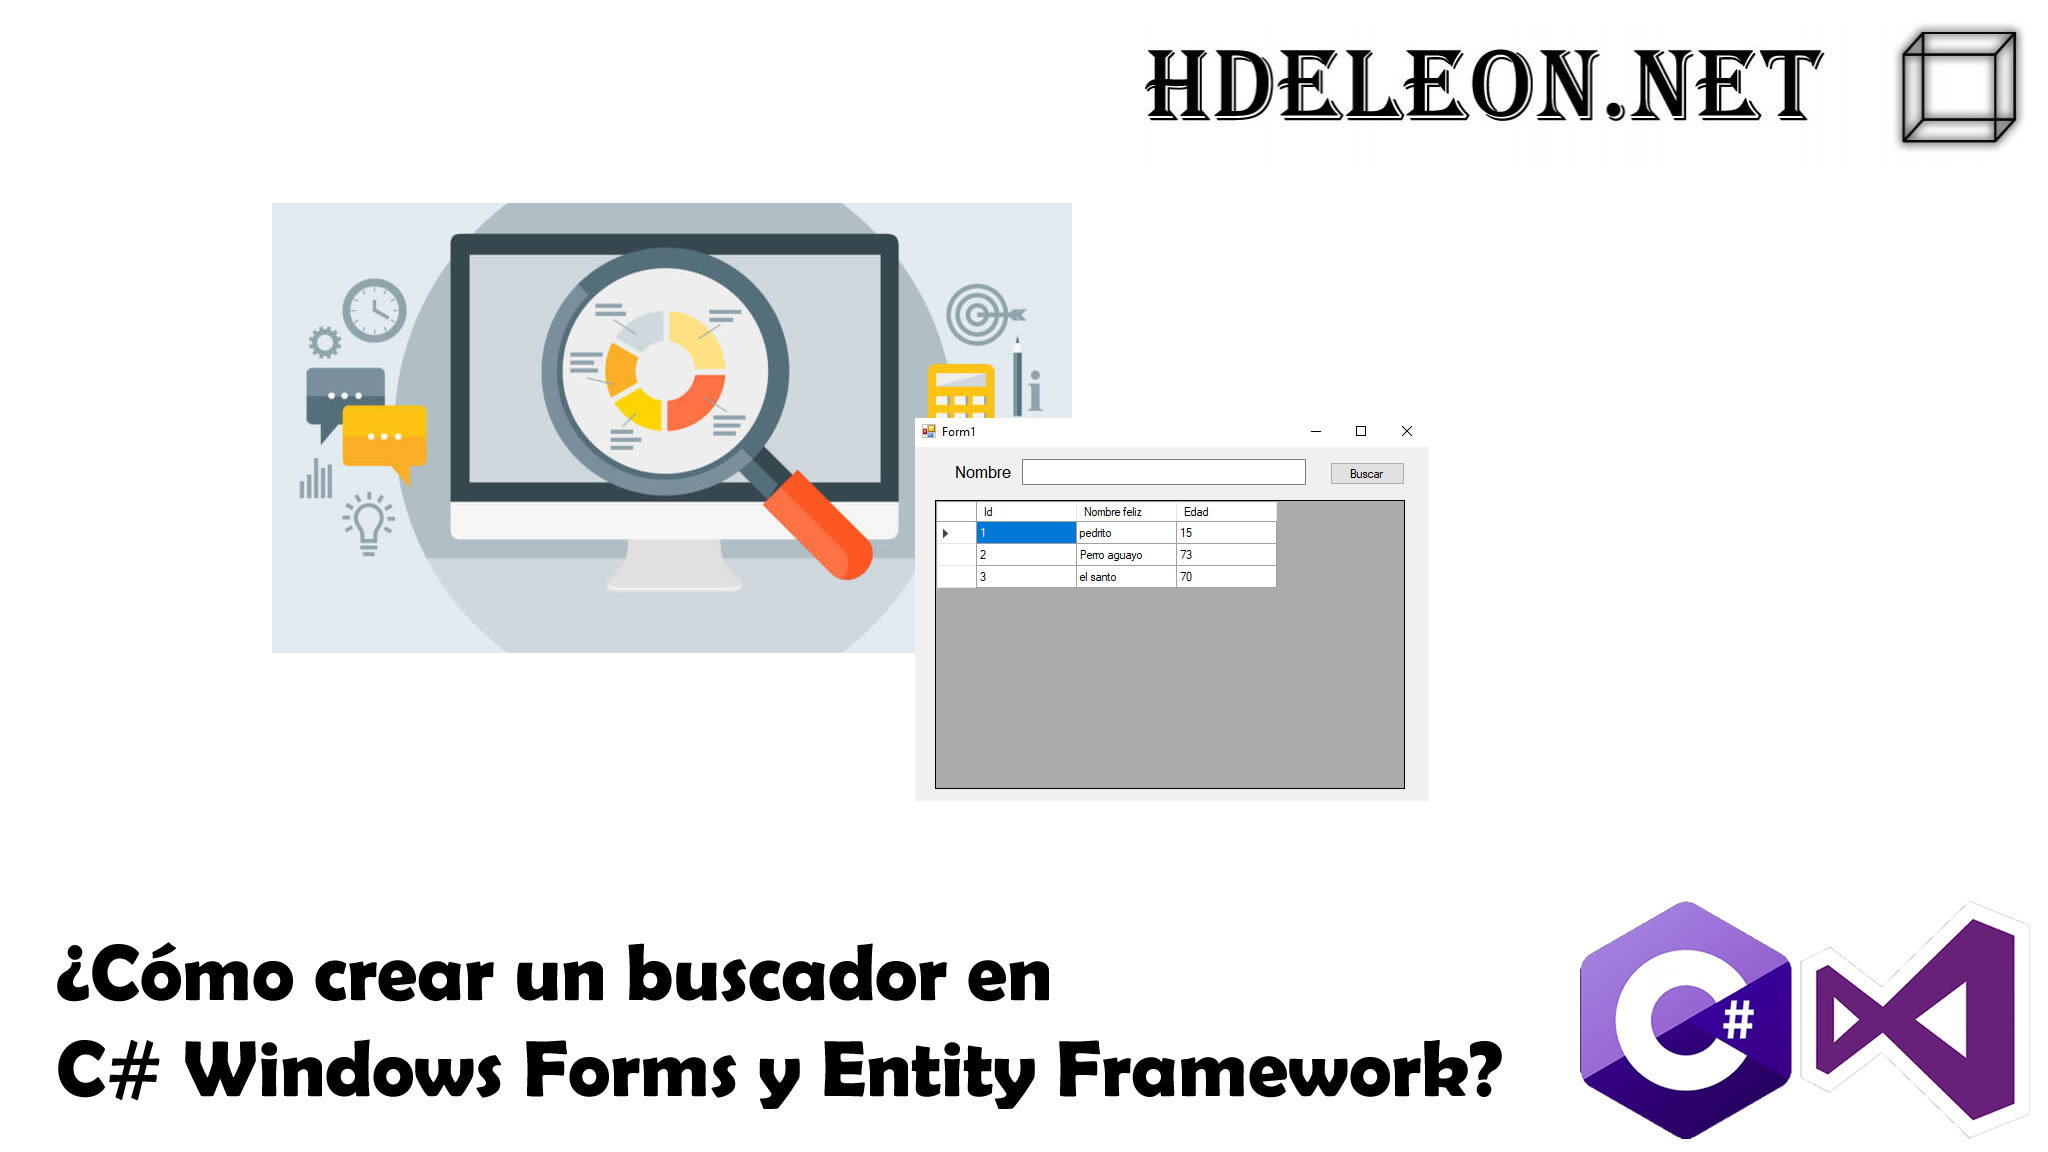 ¿Cómo crear un buscador en C# Windows Forms y Entity Framework?